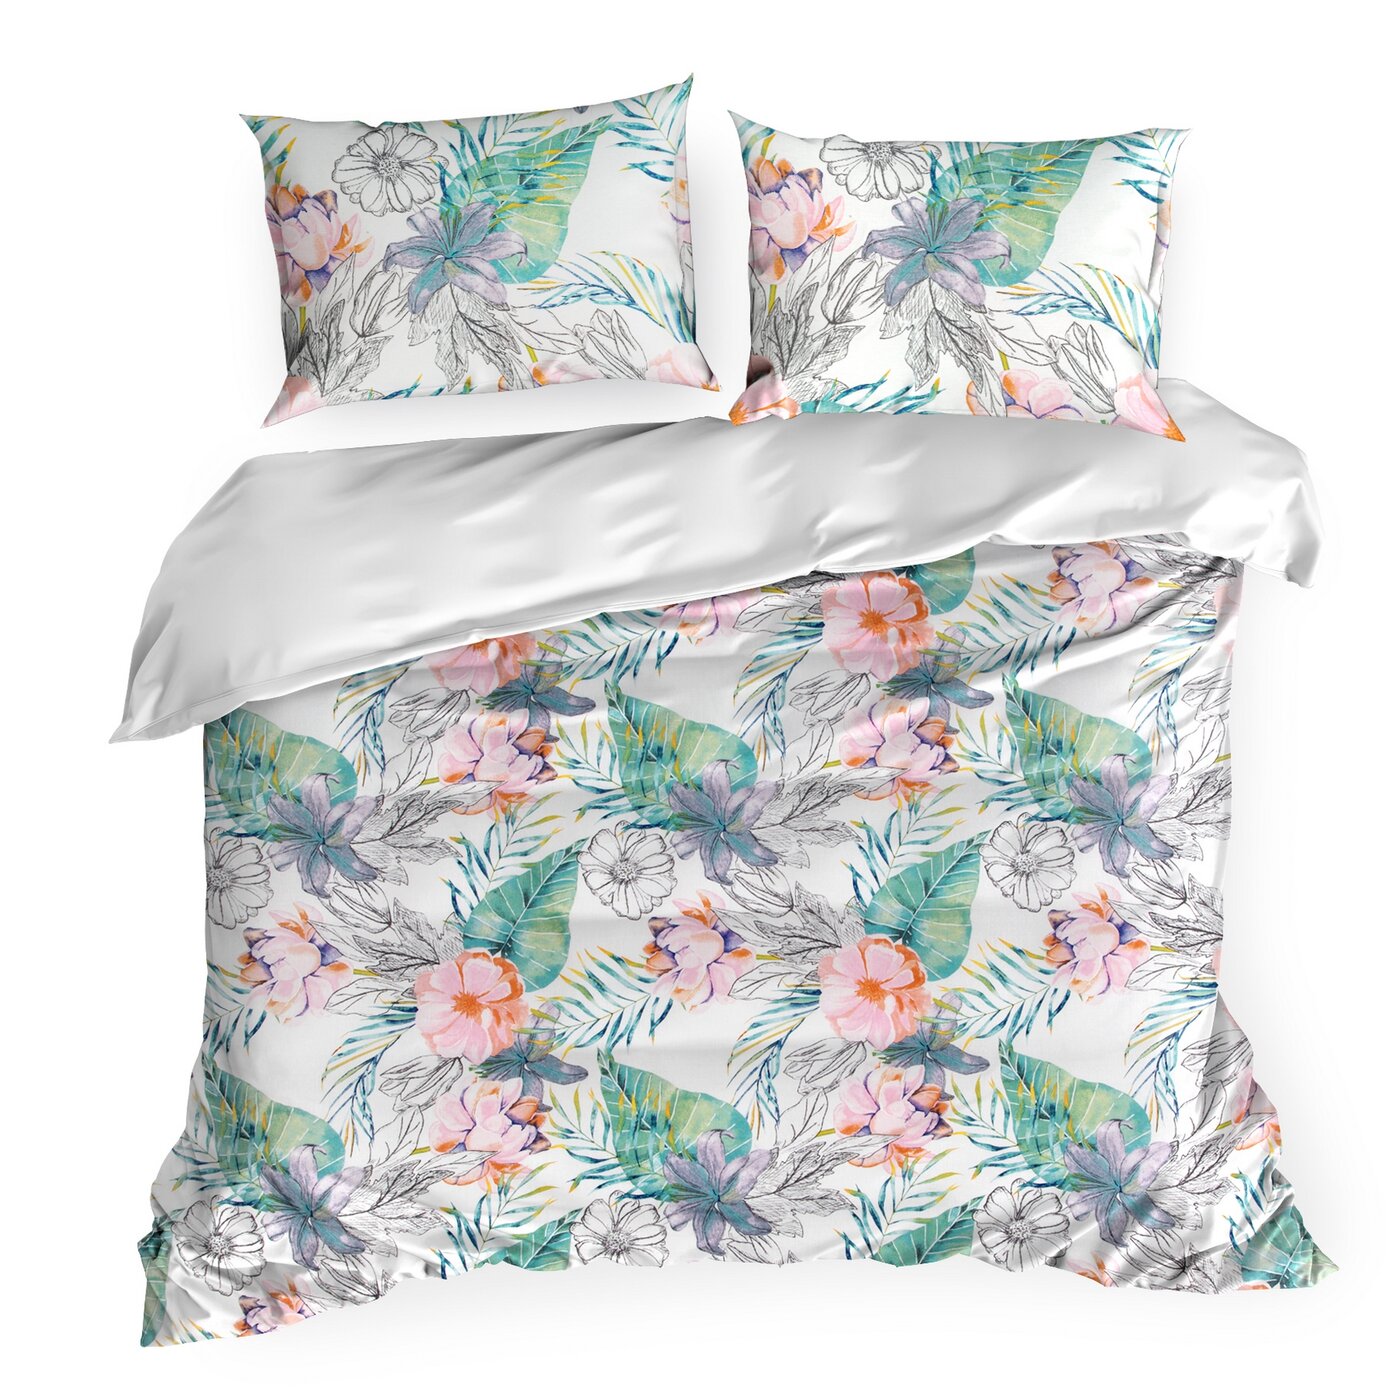 Lenjerie de pat cu un motiv colorat de flori exotice multicolor IDA 05 Perdele de Poveste